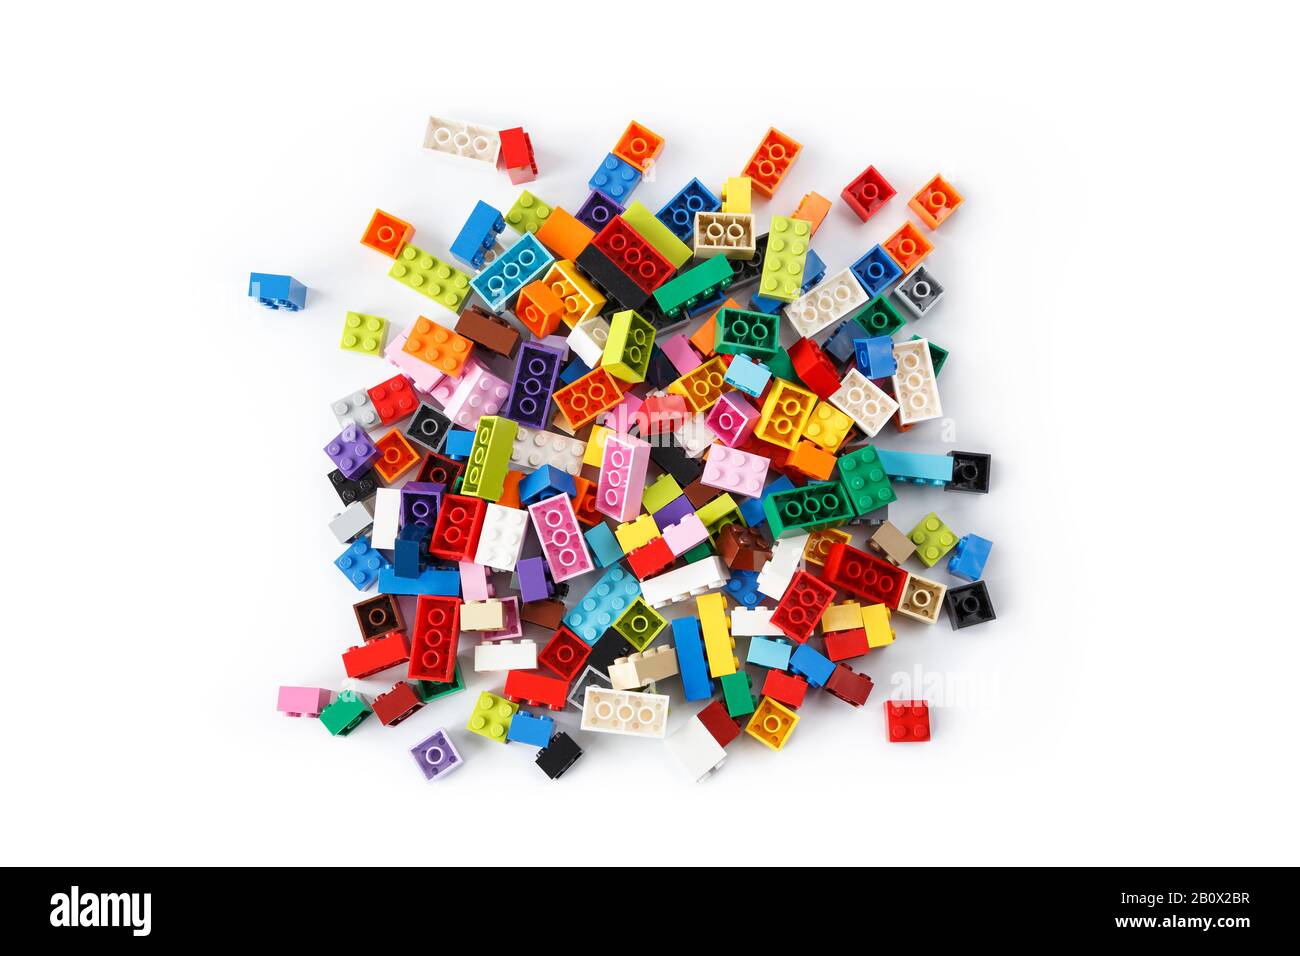 Nahaufnahme eines aufgeräumten Haufens bunter Lego-Steine von oben, isoliert auf weißem Hintergrund. Draufsicht. Stockfoto